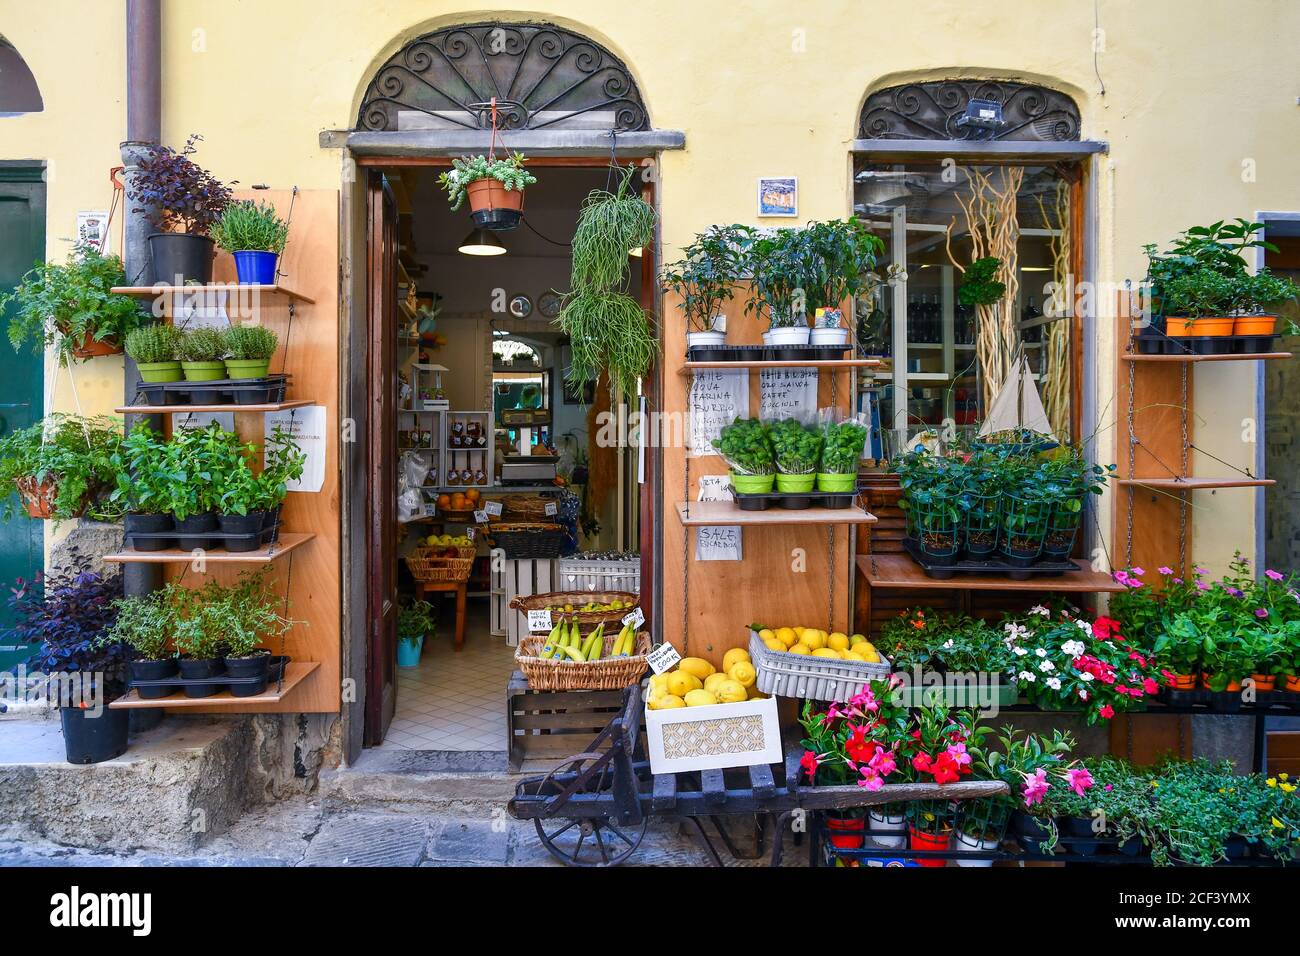 Ein kleines Lebensmittelgeschäft mit blühenden Pflanzen, Kräutern und Früchten auf dem Bürgersteig im alten Fischerdorf, Porto Venere, La Spezia, Italien Stockfoto